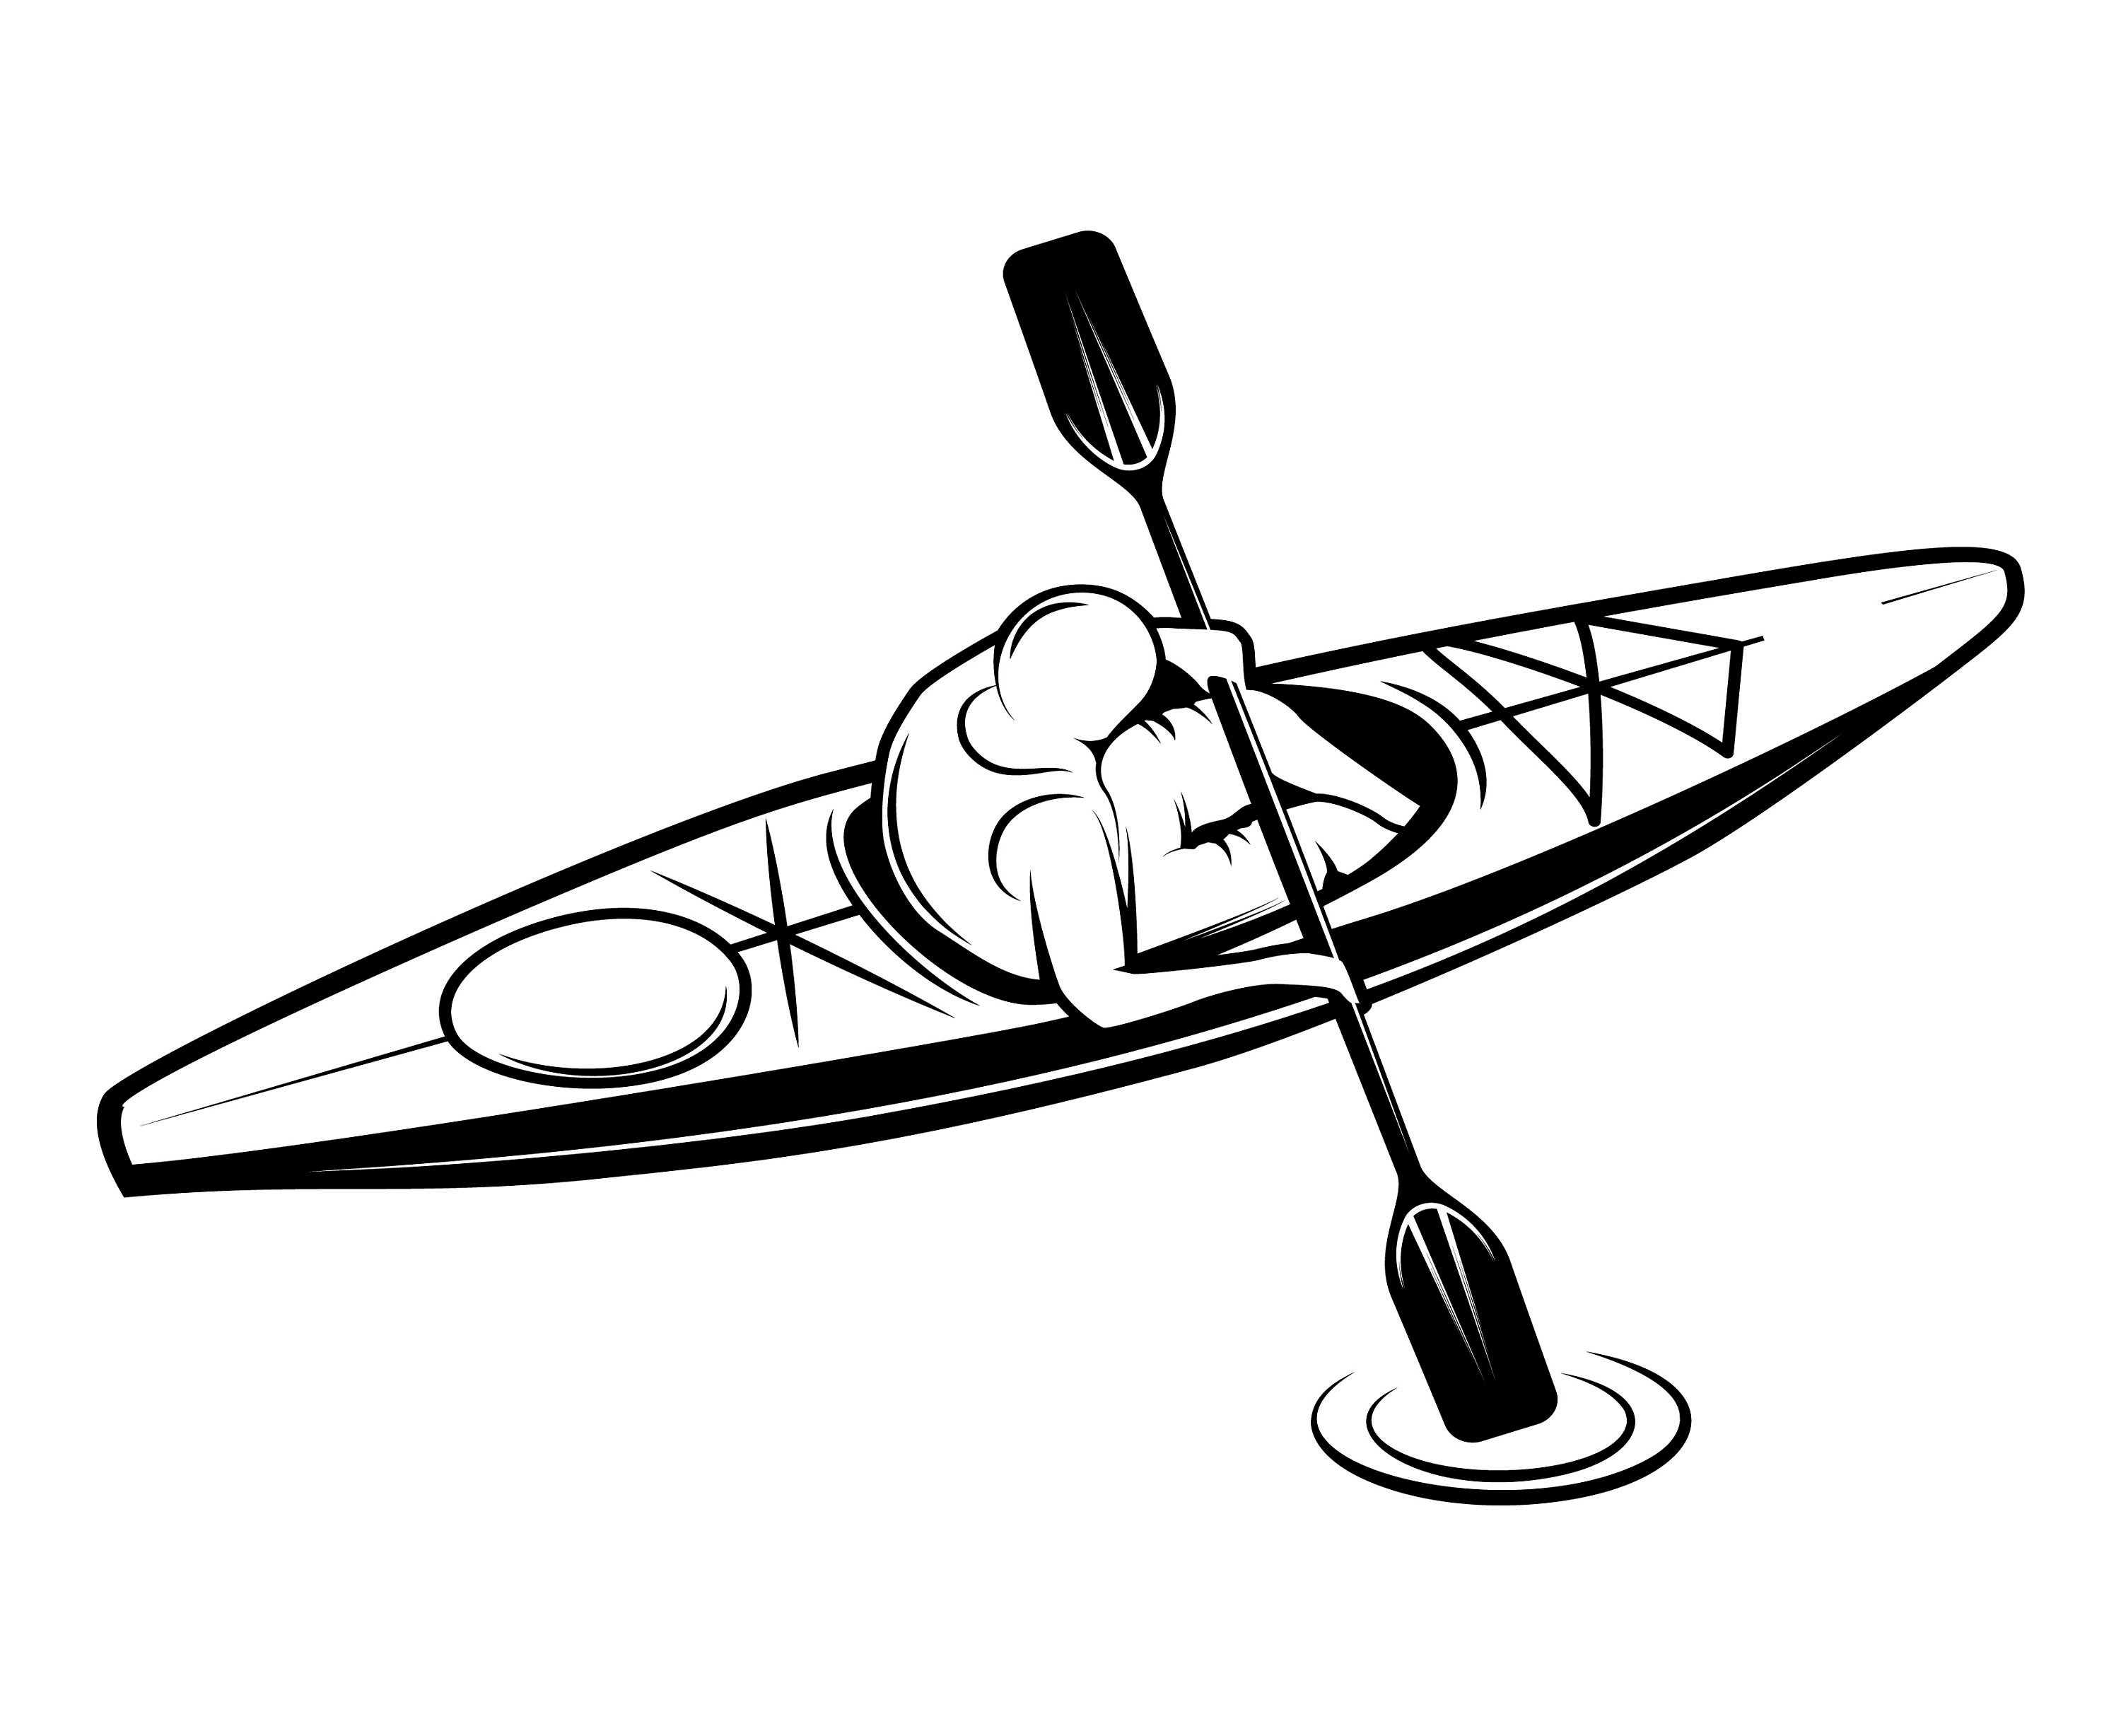 Kayaking clipart drawing, Kayaking drawing Transparent FREE for